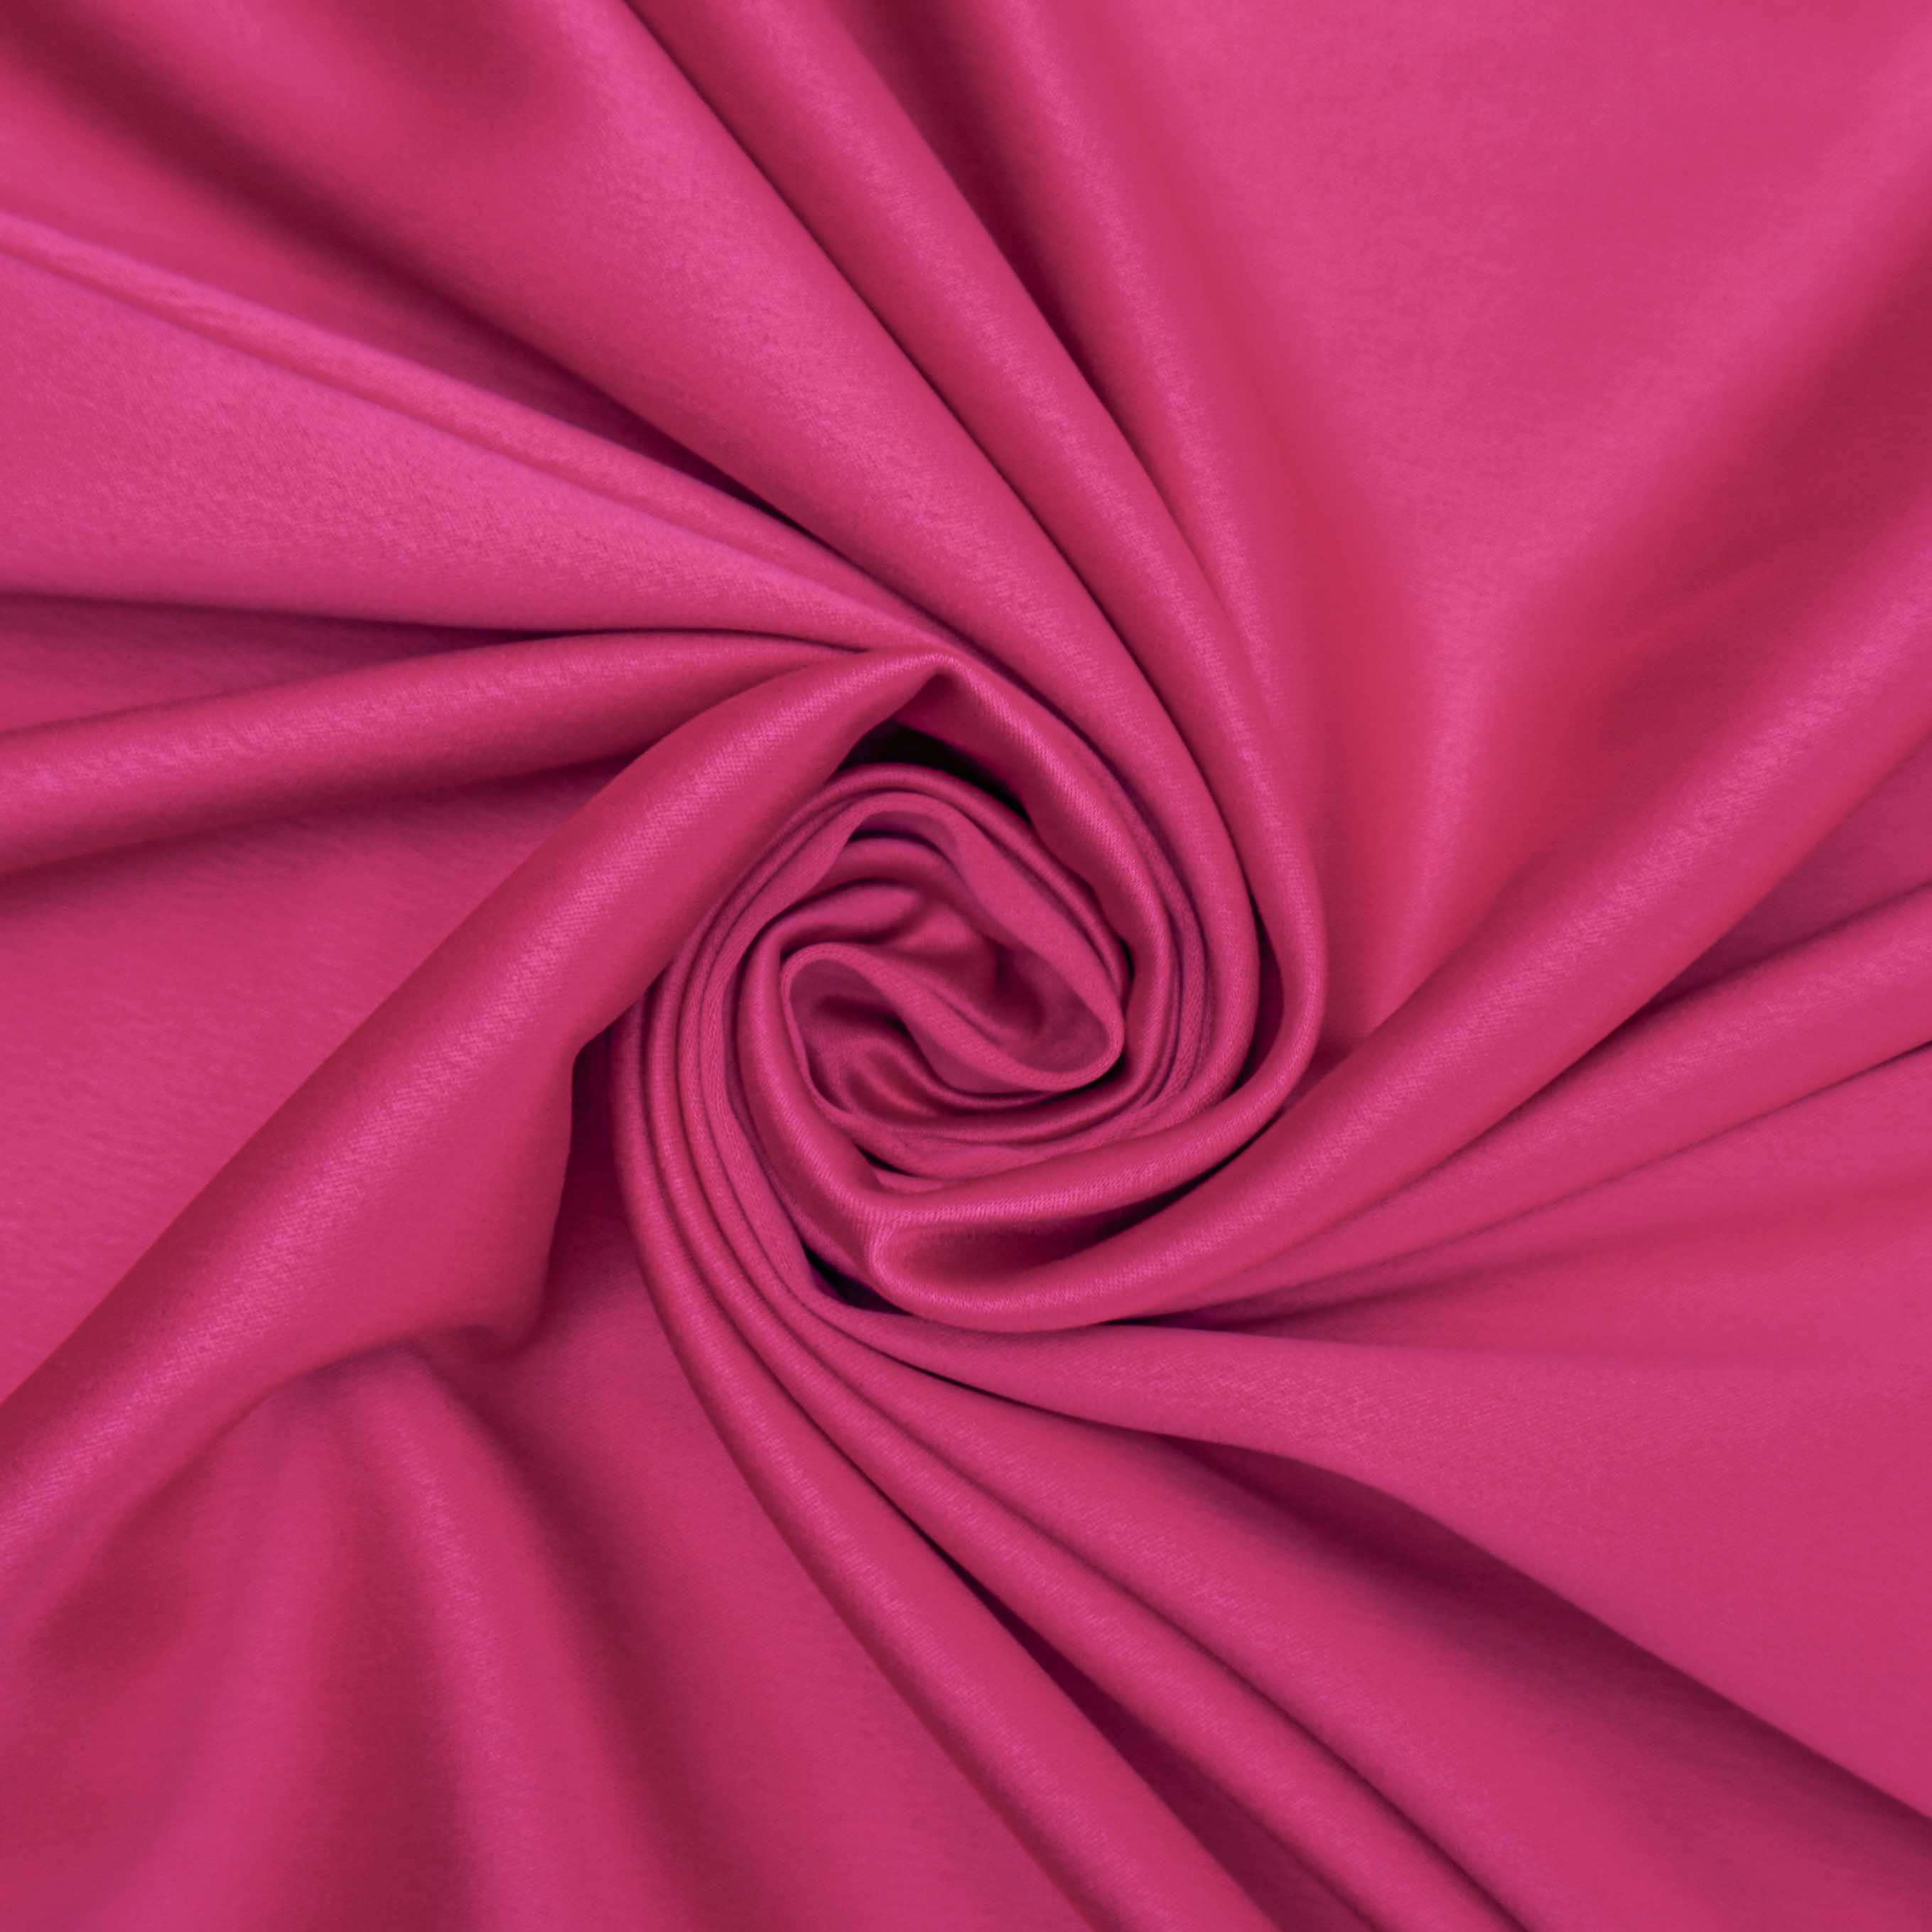 Tecido crepe versailles encorpado pink